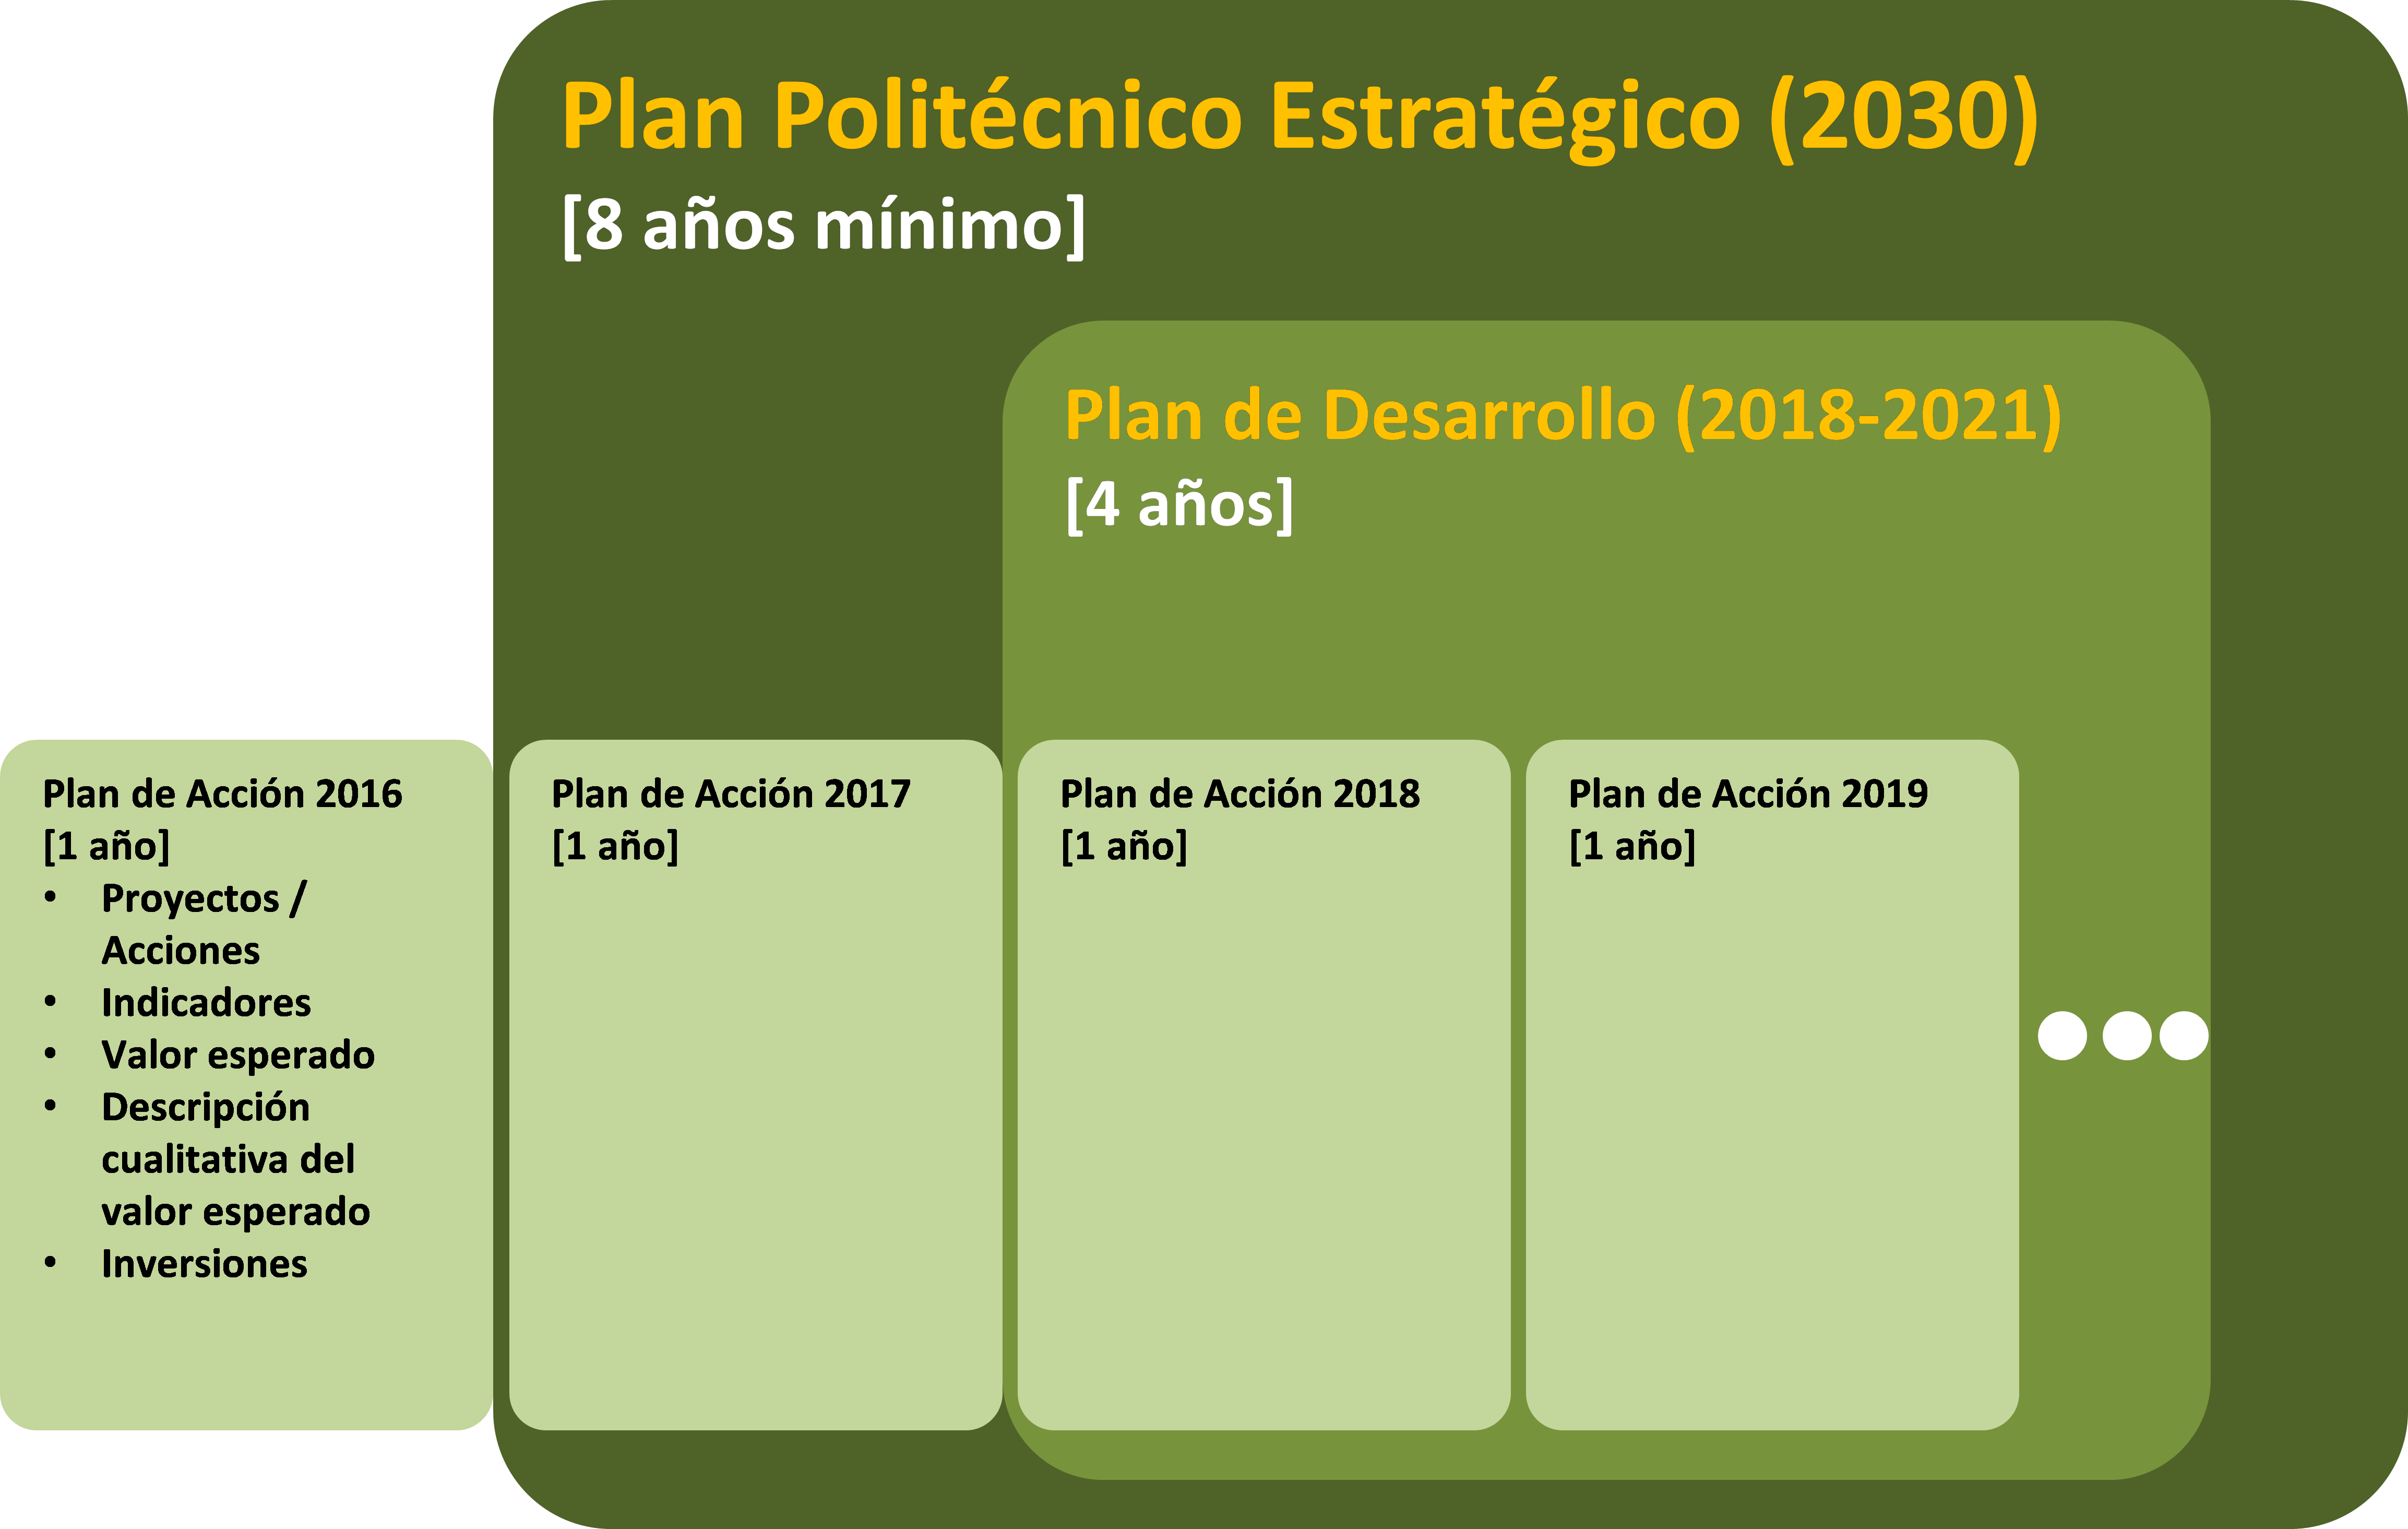 Plan Politécnico Estratégico 2030